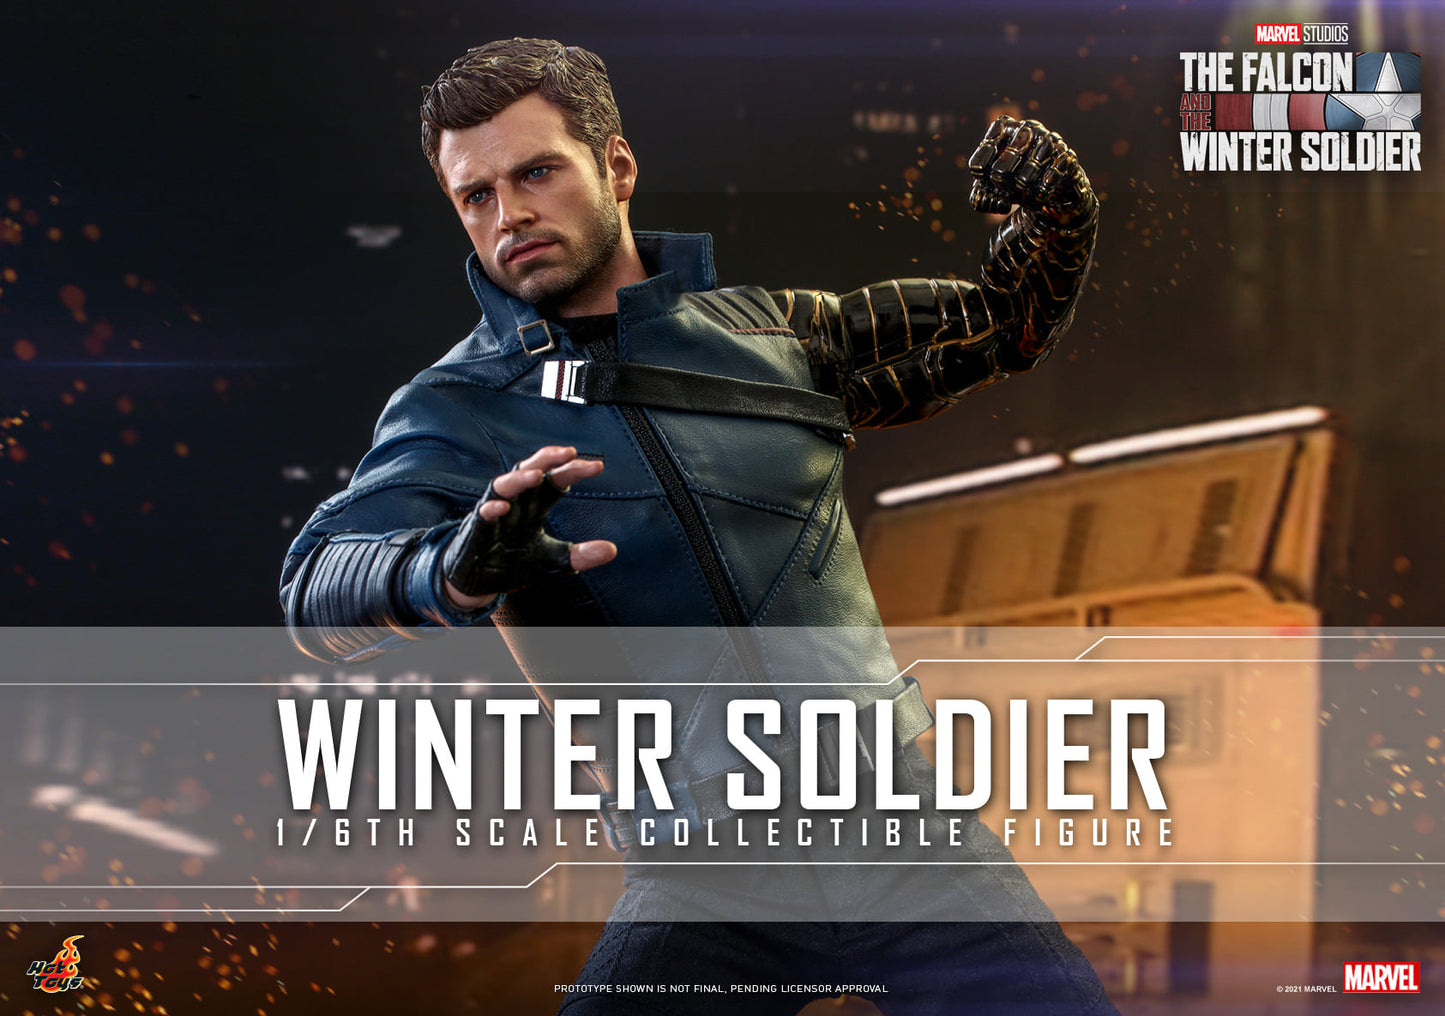 Pedido Figura Winter Soldier marca Hot Toys TMS039 escala 1/6